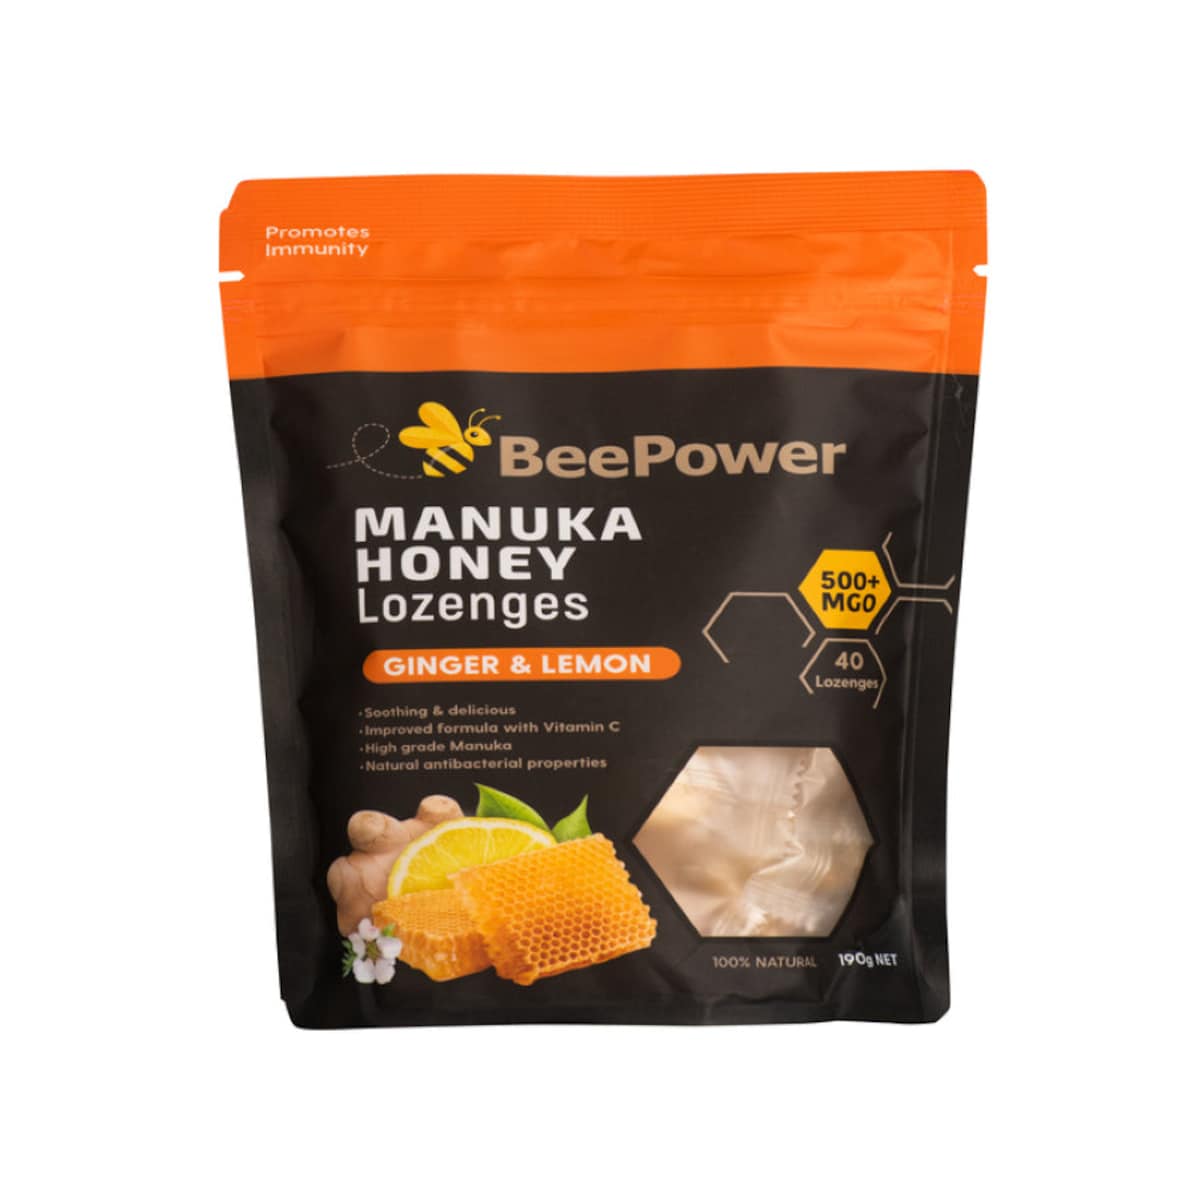 BeePower Manuka Honey Lozenges Ginger & Lemon 40 Pack